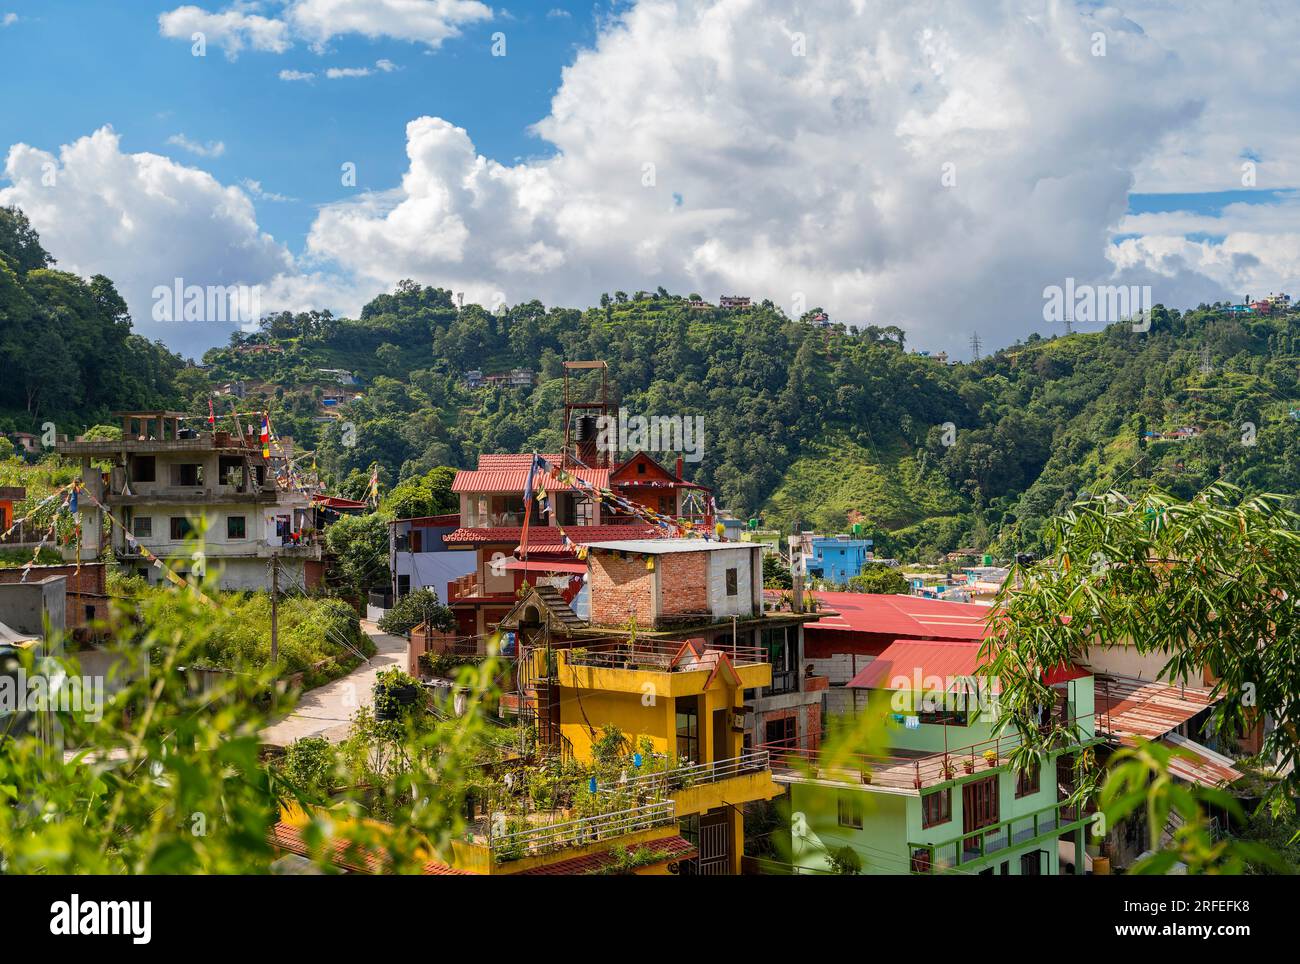 Vue sur les bâtiments colorés entourés de montagnes verdoyantes, Katmandou, Népal. Banque D'Images